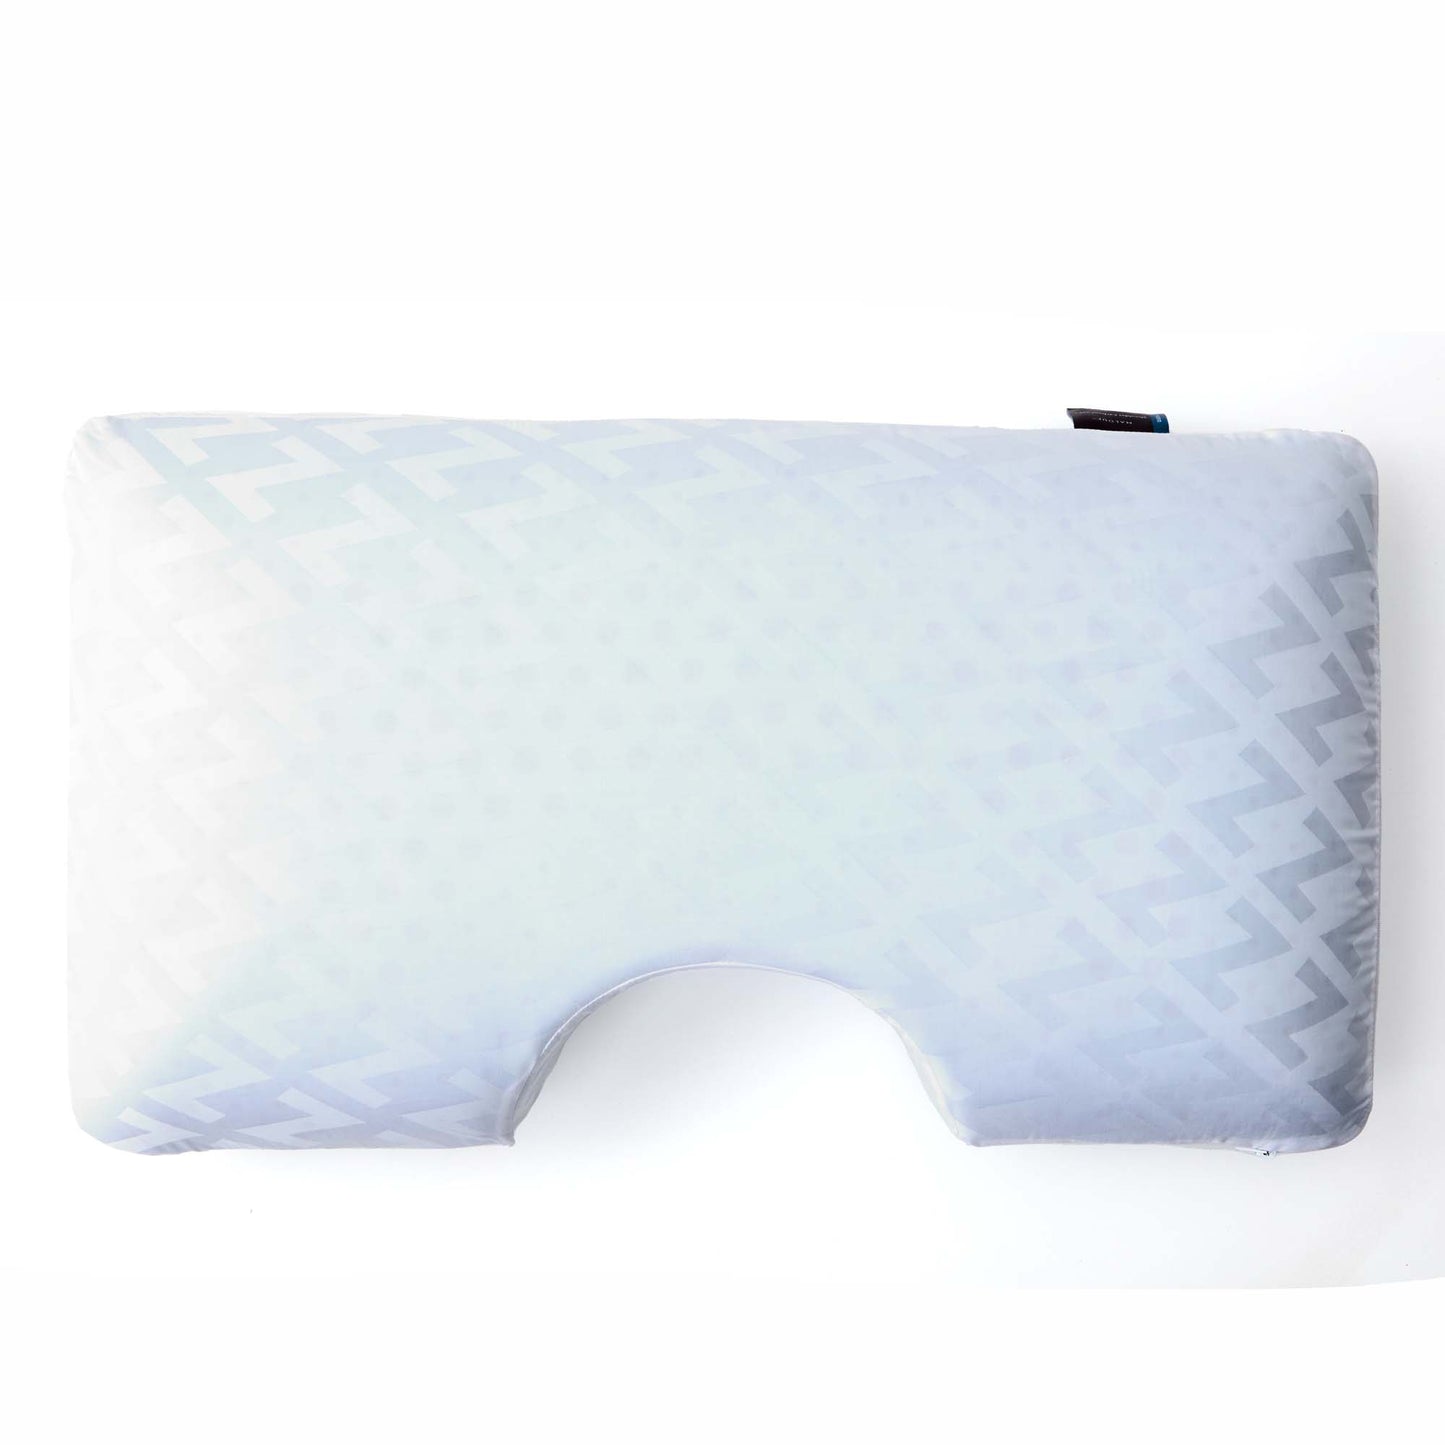 Cuddle Curve Blue Gel Pillow